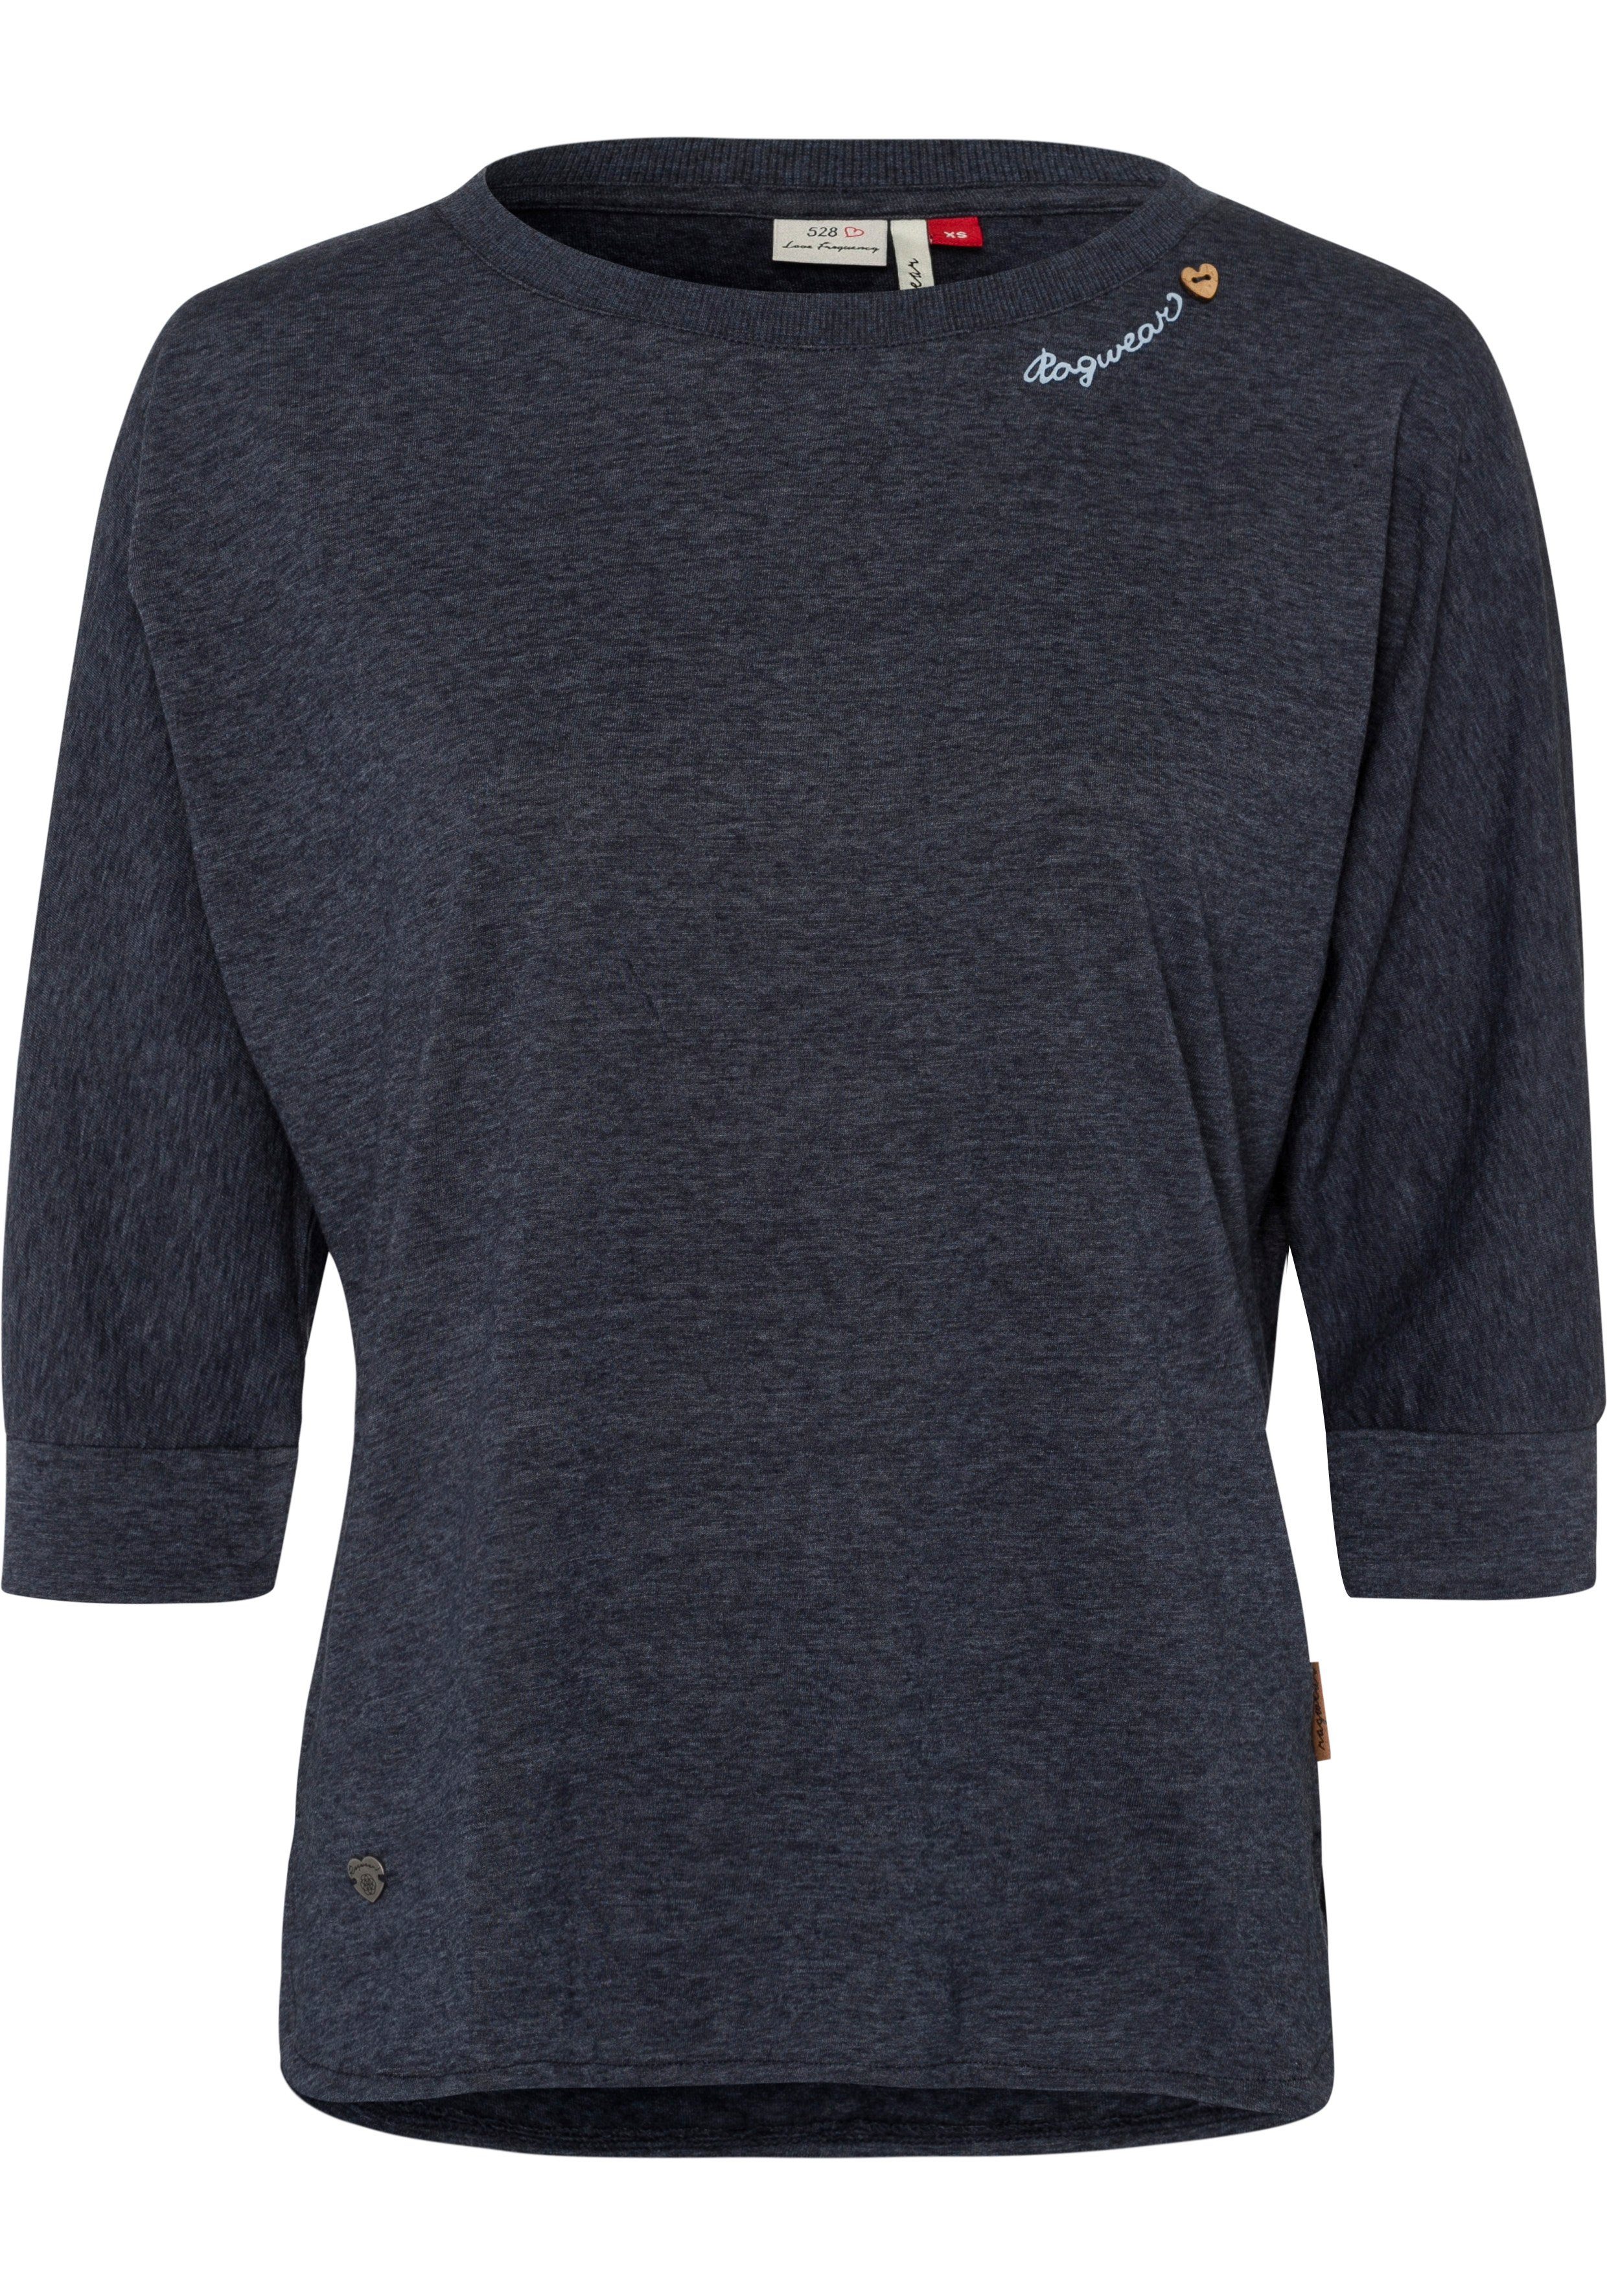 Ragwear T-Shirt SHIMONA mit Zierknopfbesatz in natürlicher Holzoptik im Herz-Design navy | Shirts